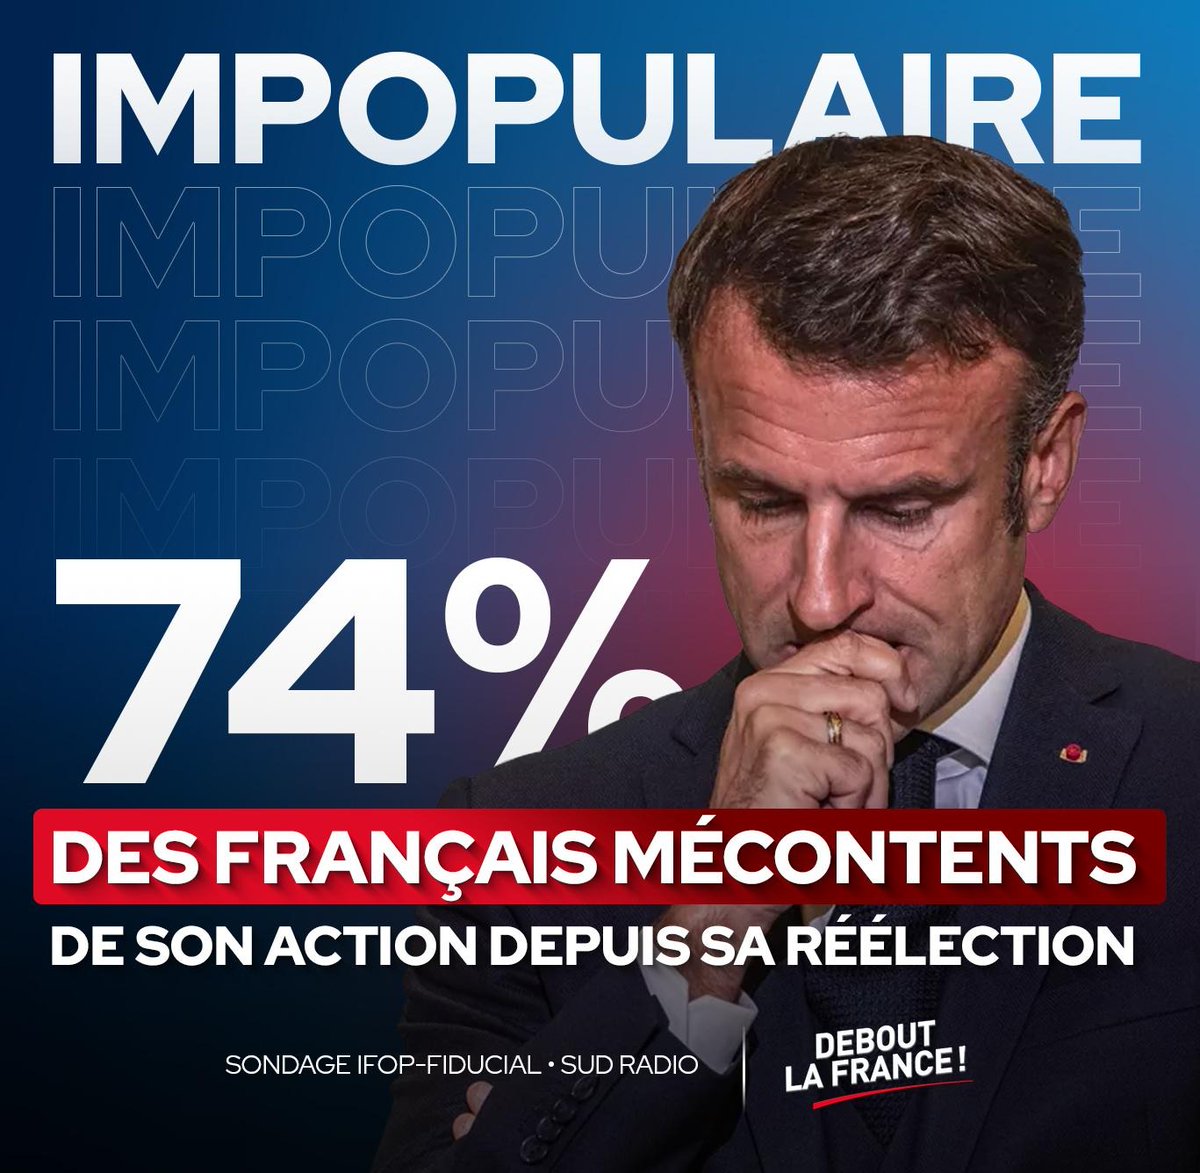 26% de nos compatriotes semblent encore croire que E. Macron va redresser le pays malgré bientôt 1 000 milliards € de dette à son actif (sur 3 100) et 2 ans de déficit record.
Nous devons les convaincre qu'il faut tourner la page de la Macronie rapidement ! #MotionDeCensure